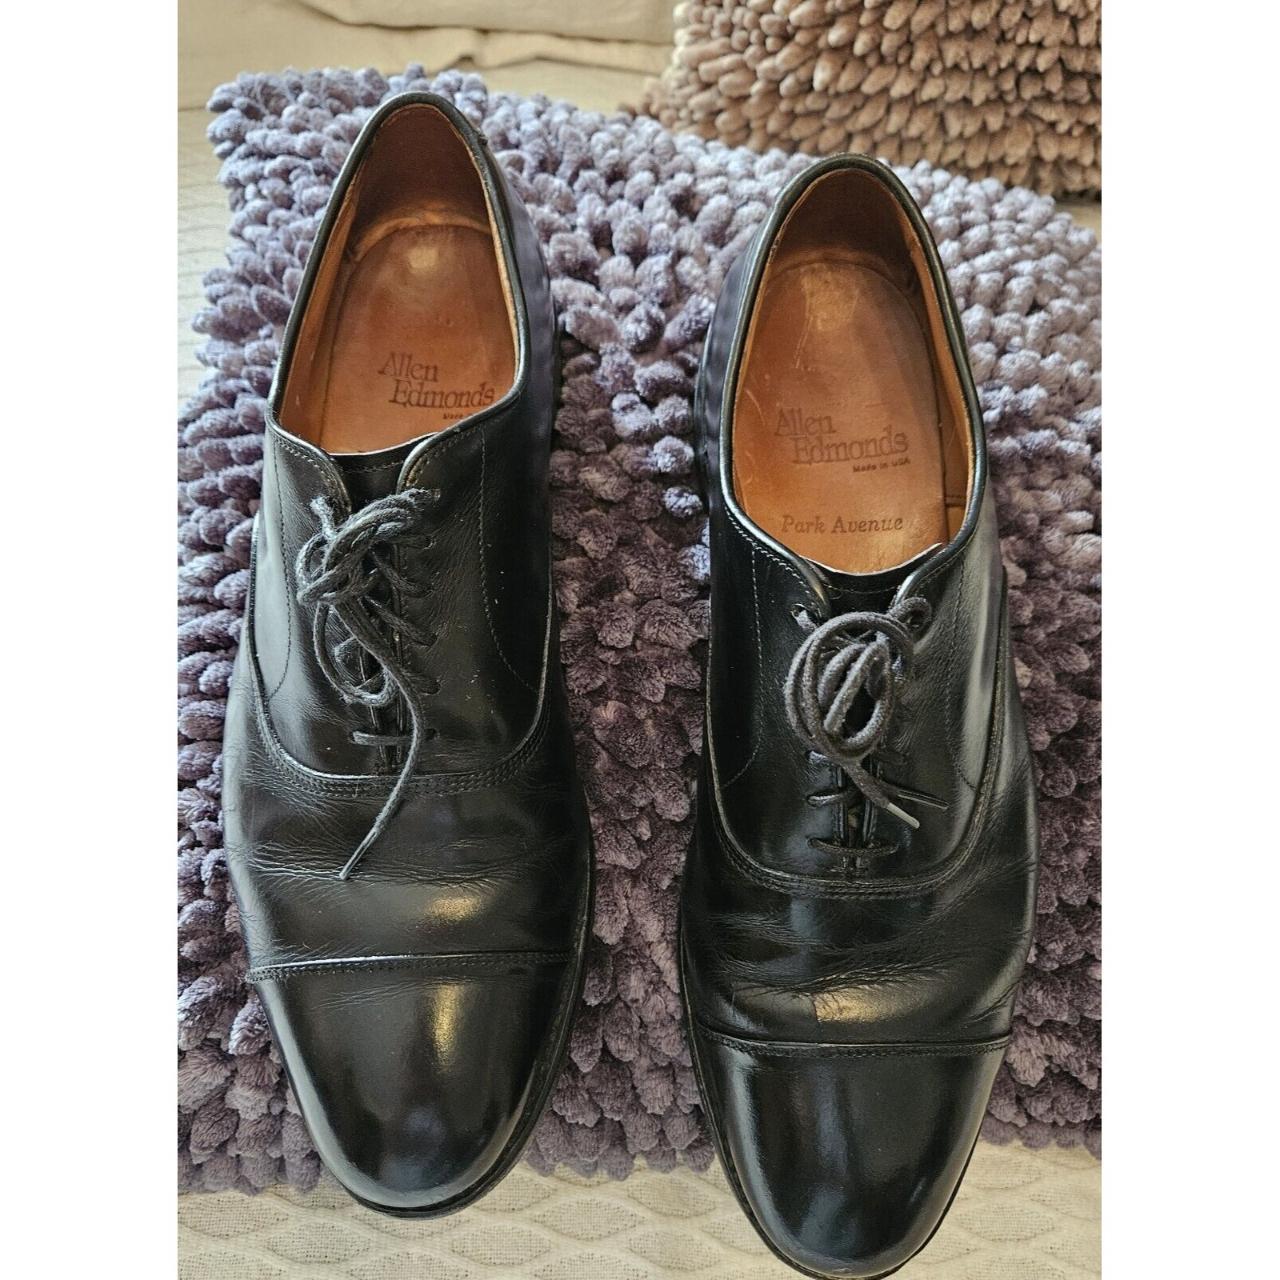 Allen Edmonds Dress Shoes Men 9D Black Park Avenue... - Depop